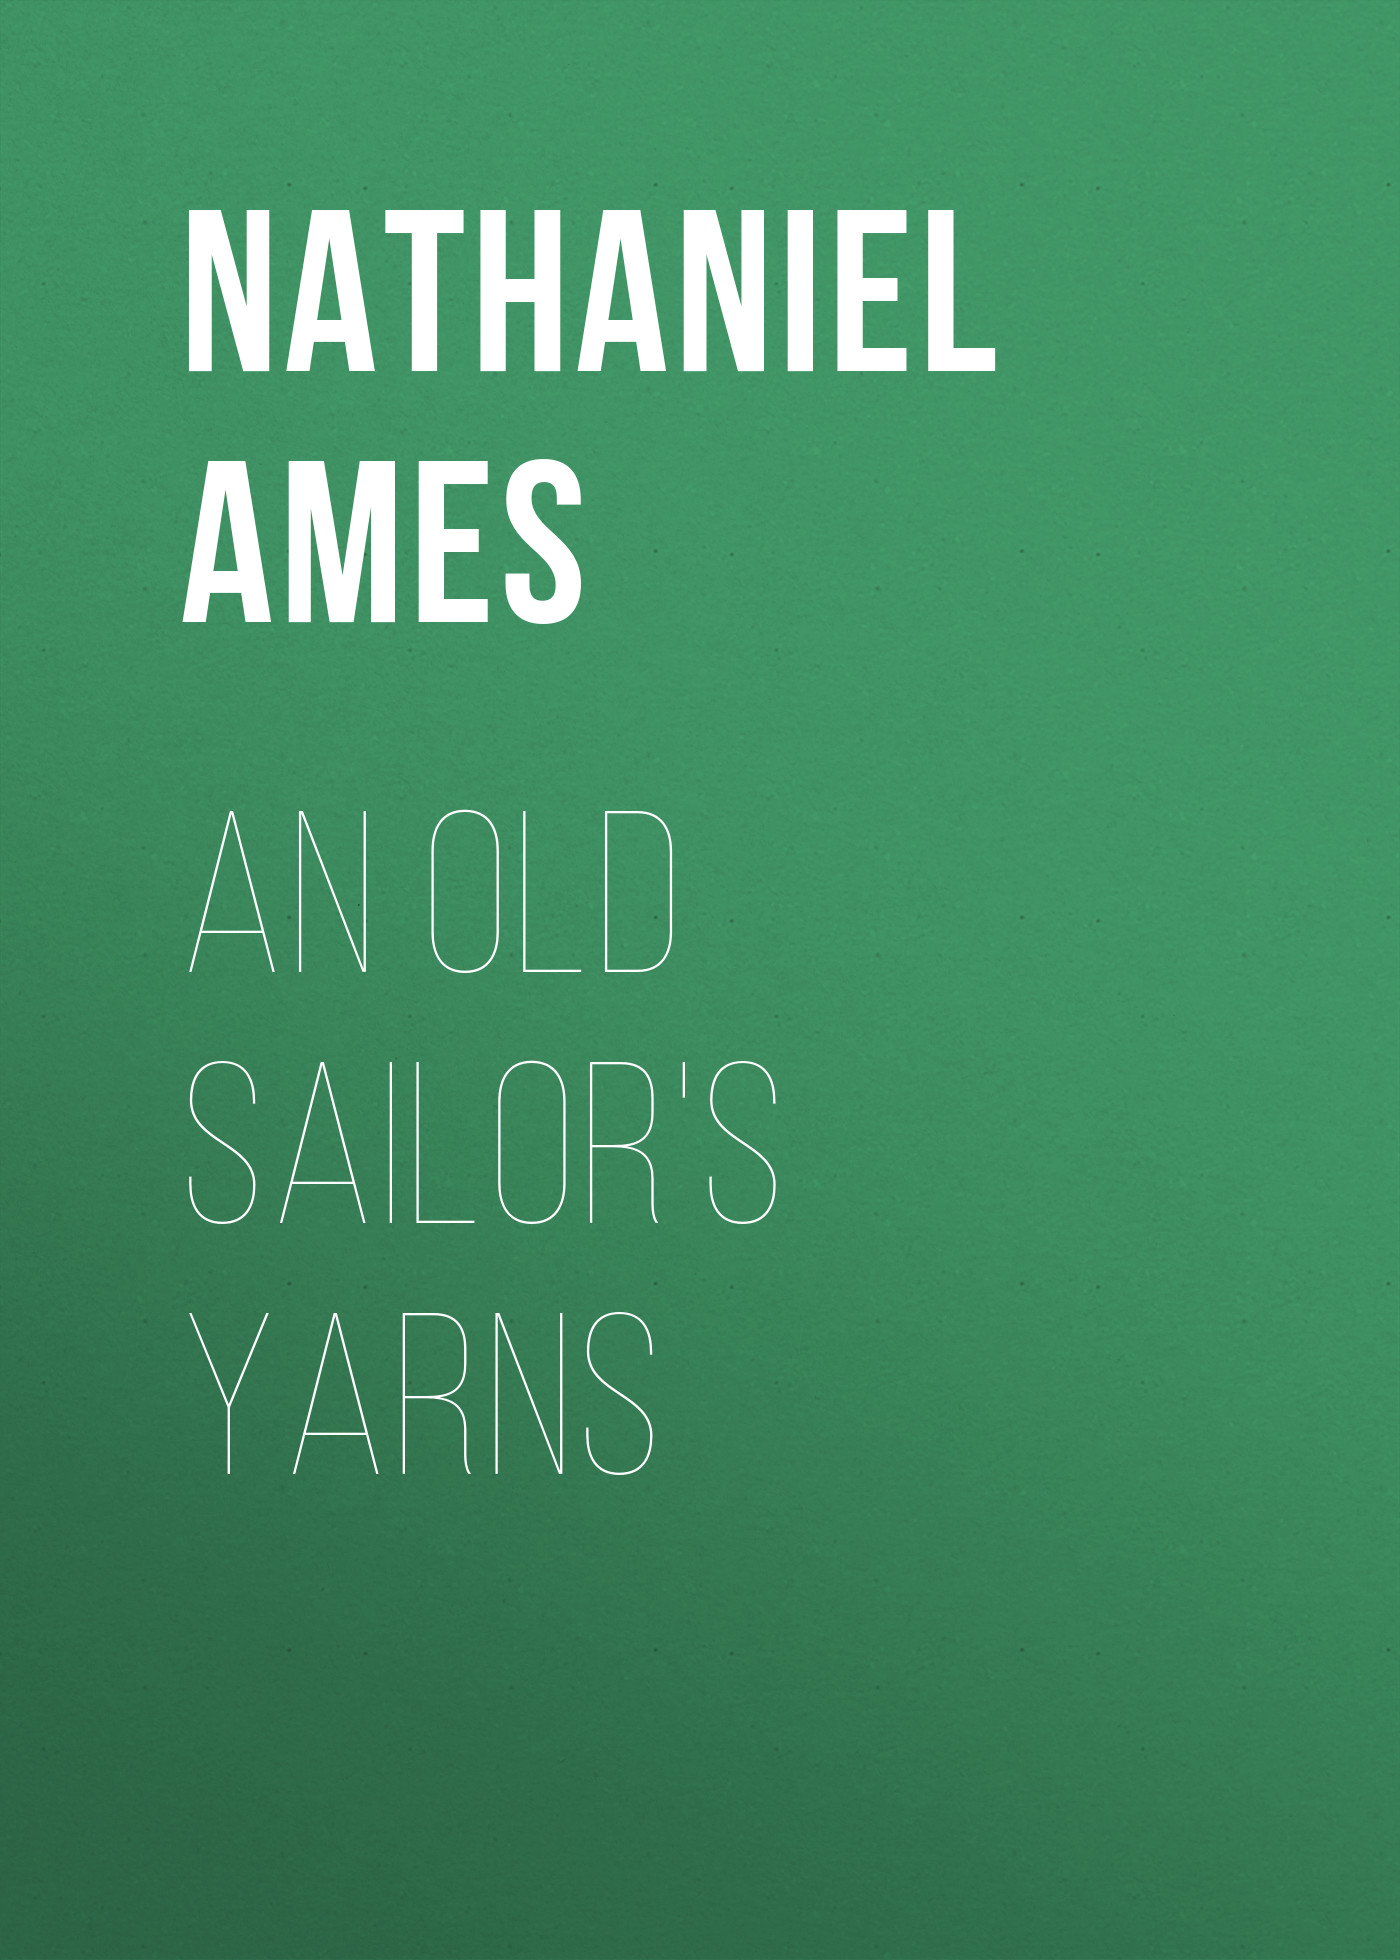 Книга An Old Sailor's Yarns из серии , созданная Nathaniel Ames, может относится к жанру Зарубежная старинная литература, Зарубежная классика. Стоимость электронной книги An Old Sailor's Yarns с идентификатором 24175852 составляет 5.99 руб.